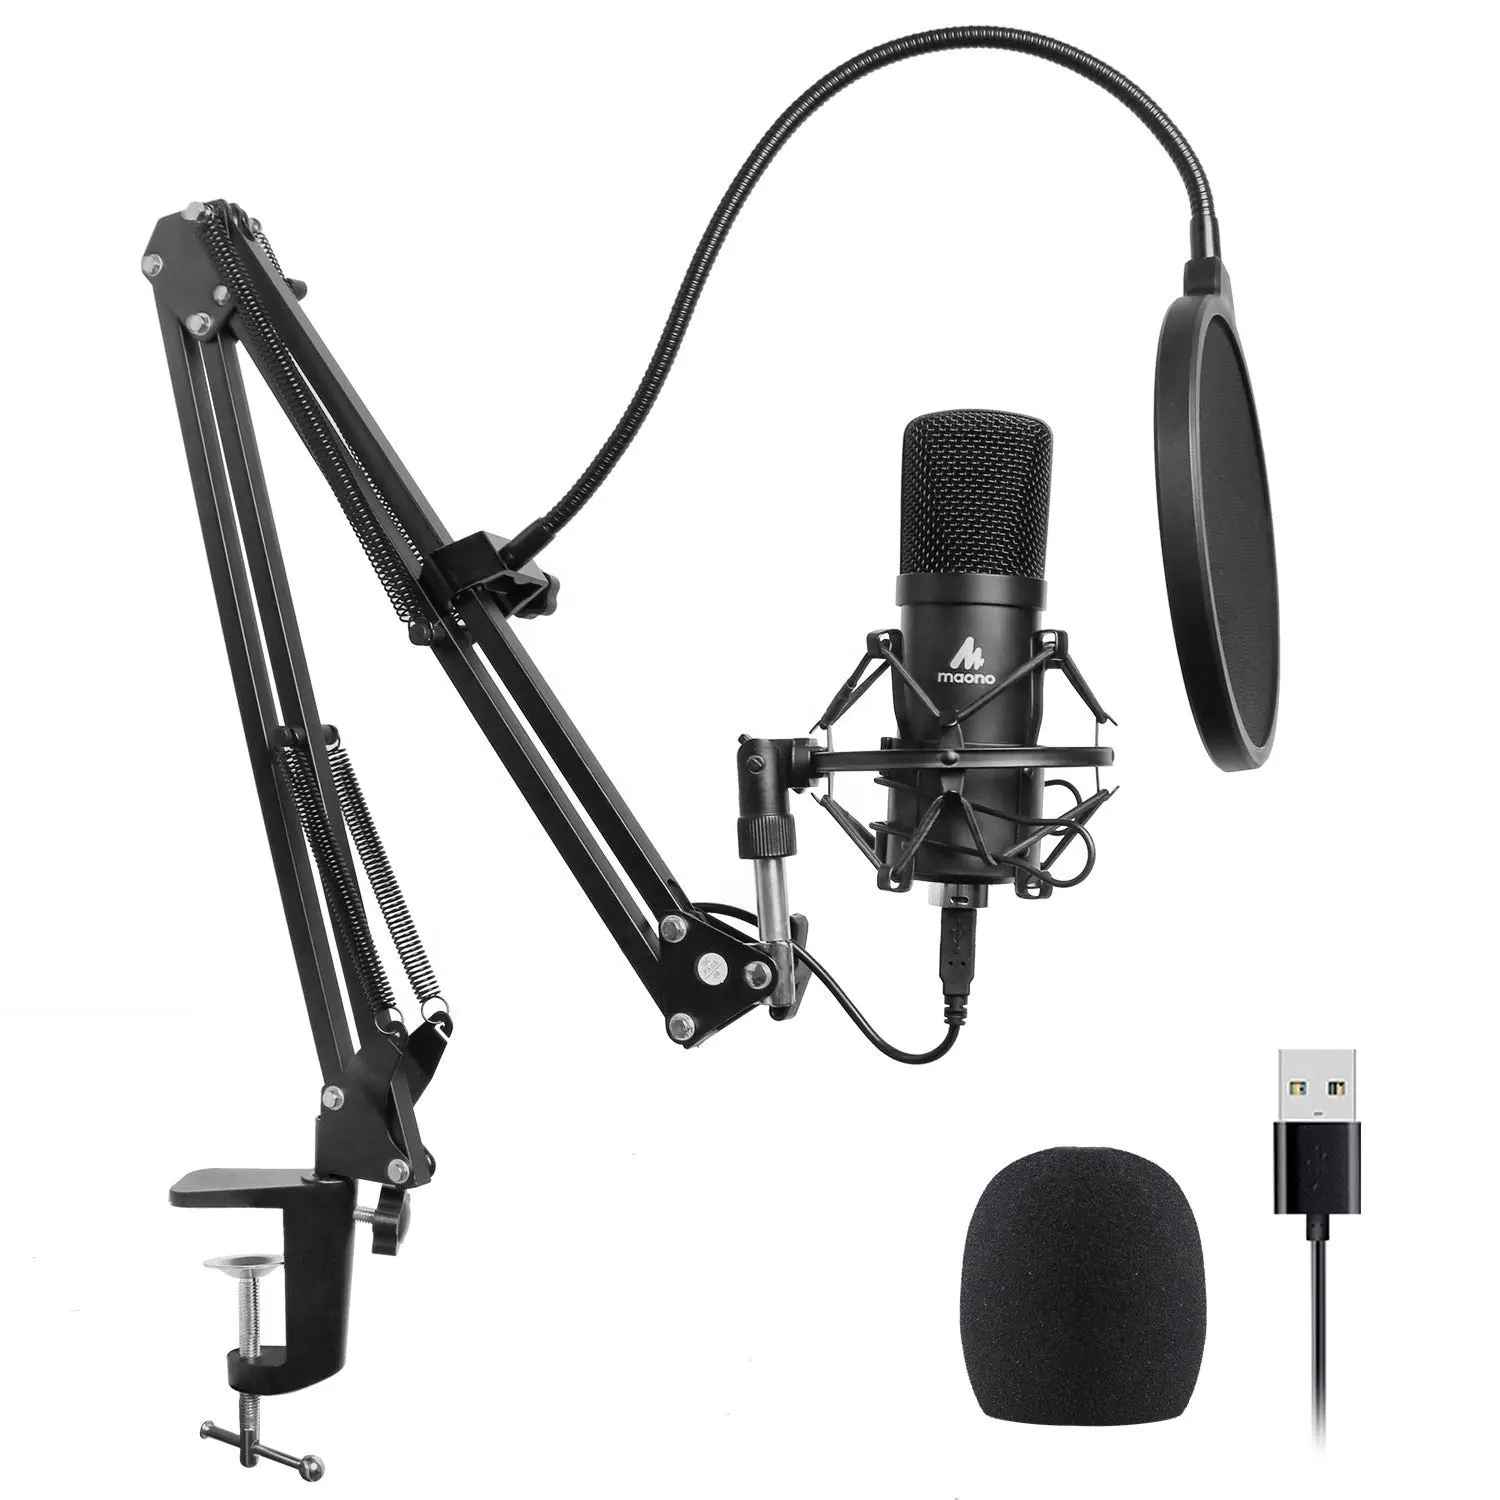 MAONO professional audio stereo mic studio 마이크 와 마이크 서